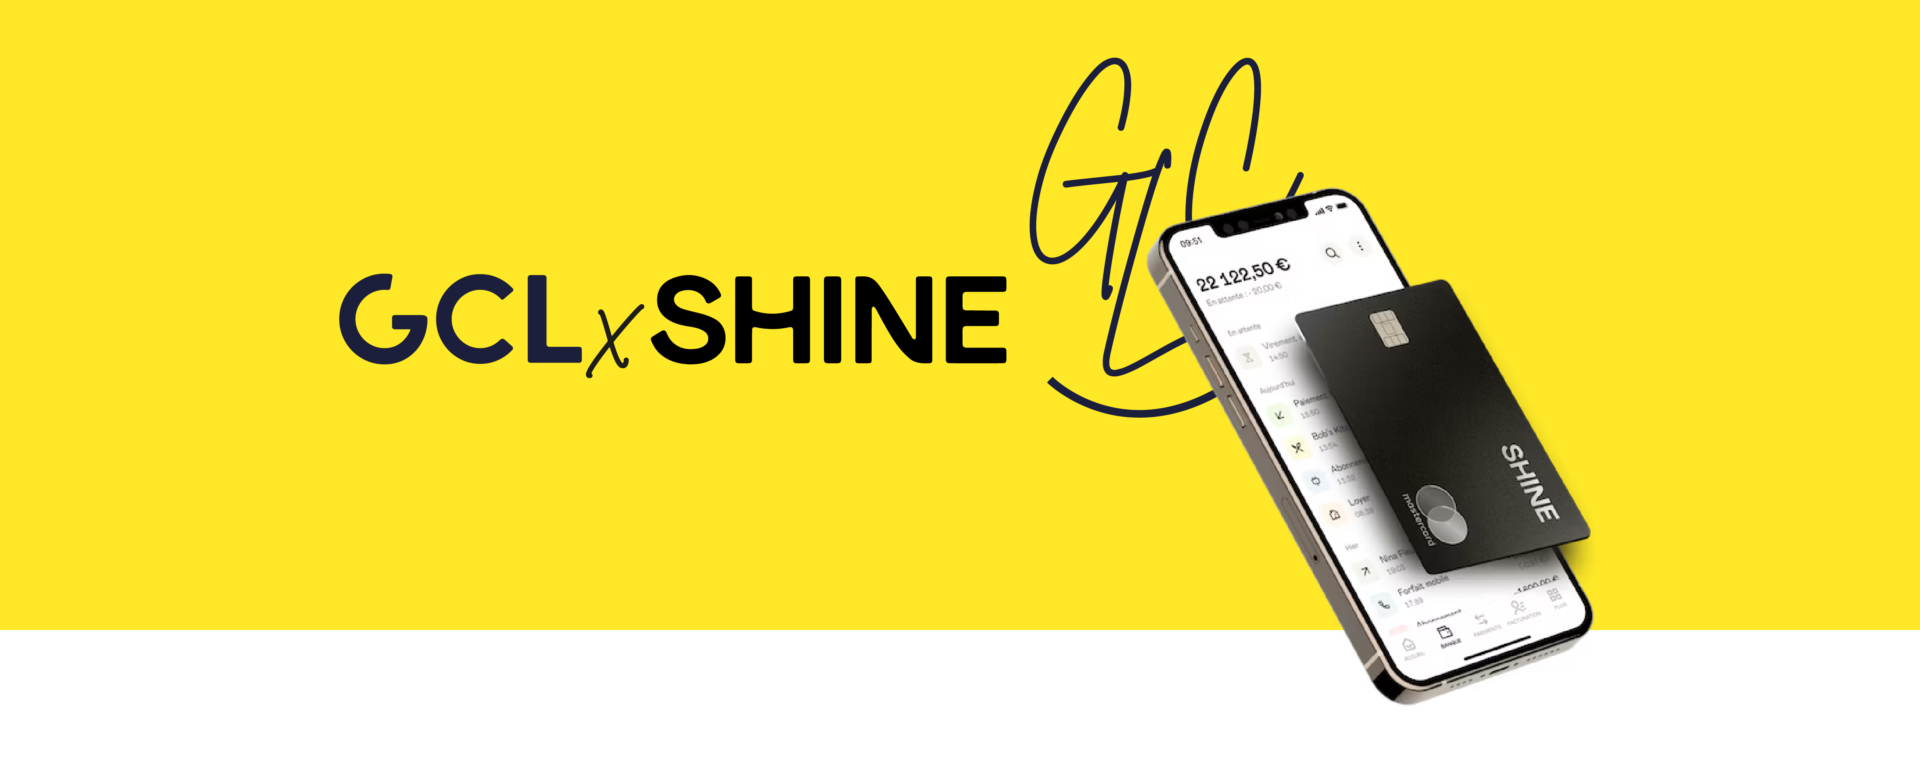 Shine x GCL : des offres